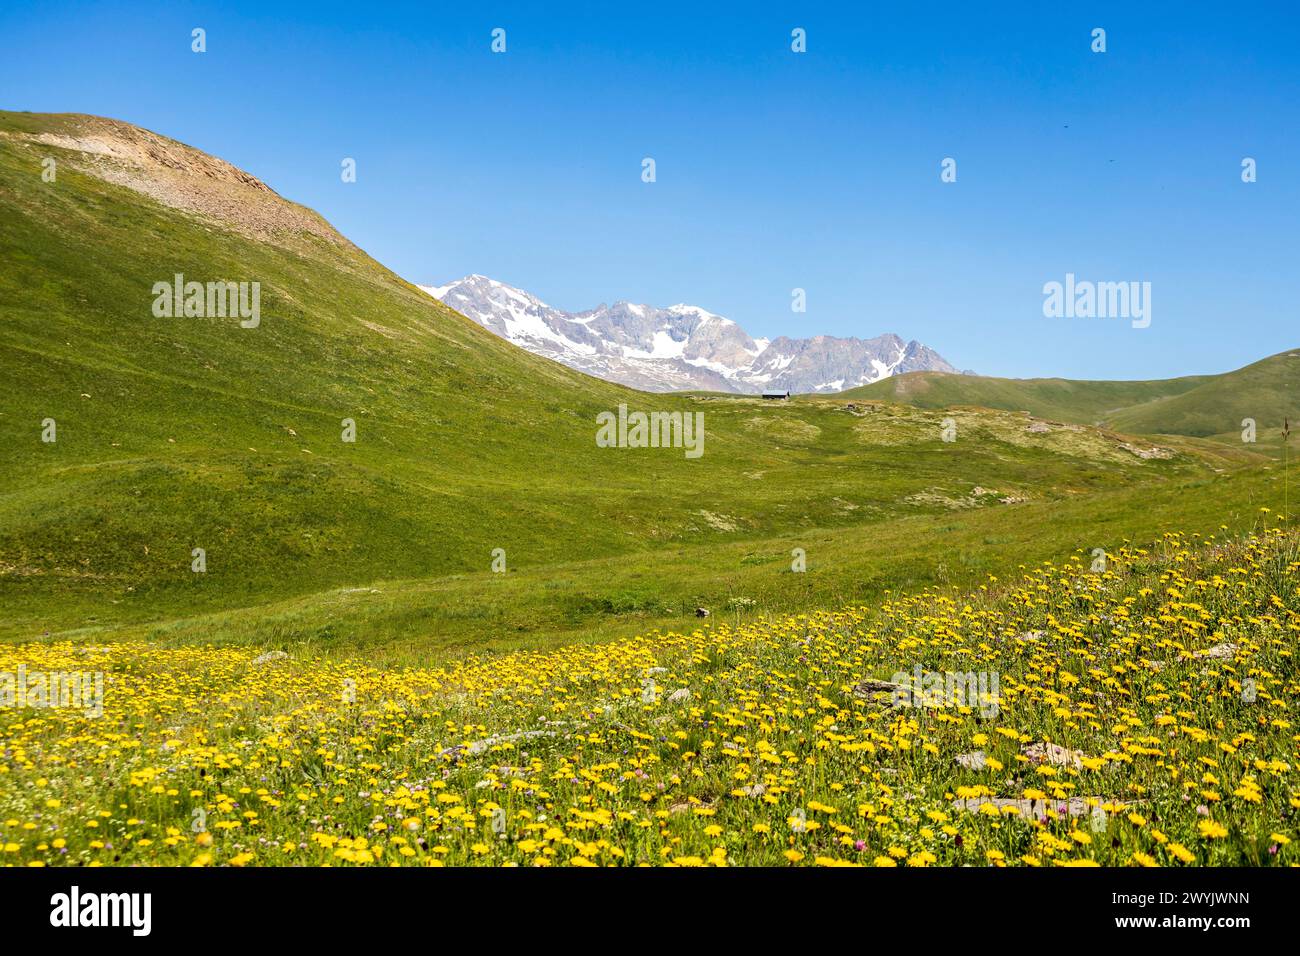 Francia, Isère, Mizoën, valle di Oisans, prato fiorito nella valle del Rif TORT, le cime delle Grandes Rousses sullo sfondo Foto Stock